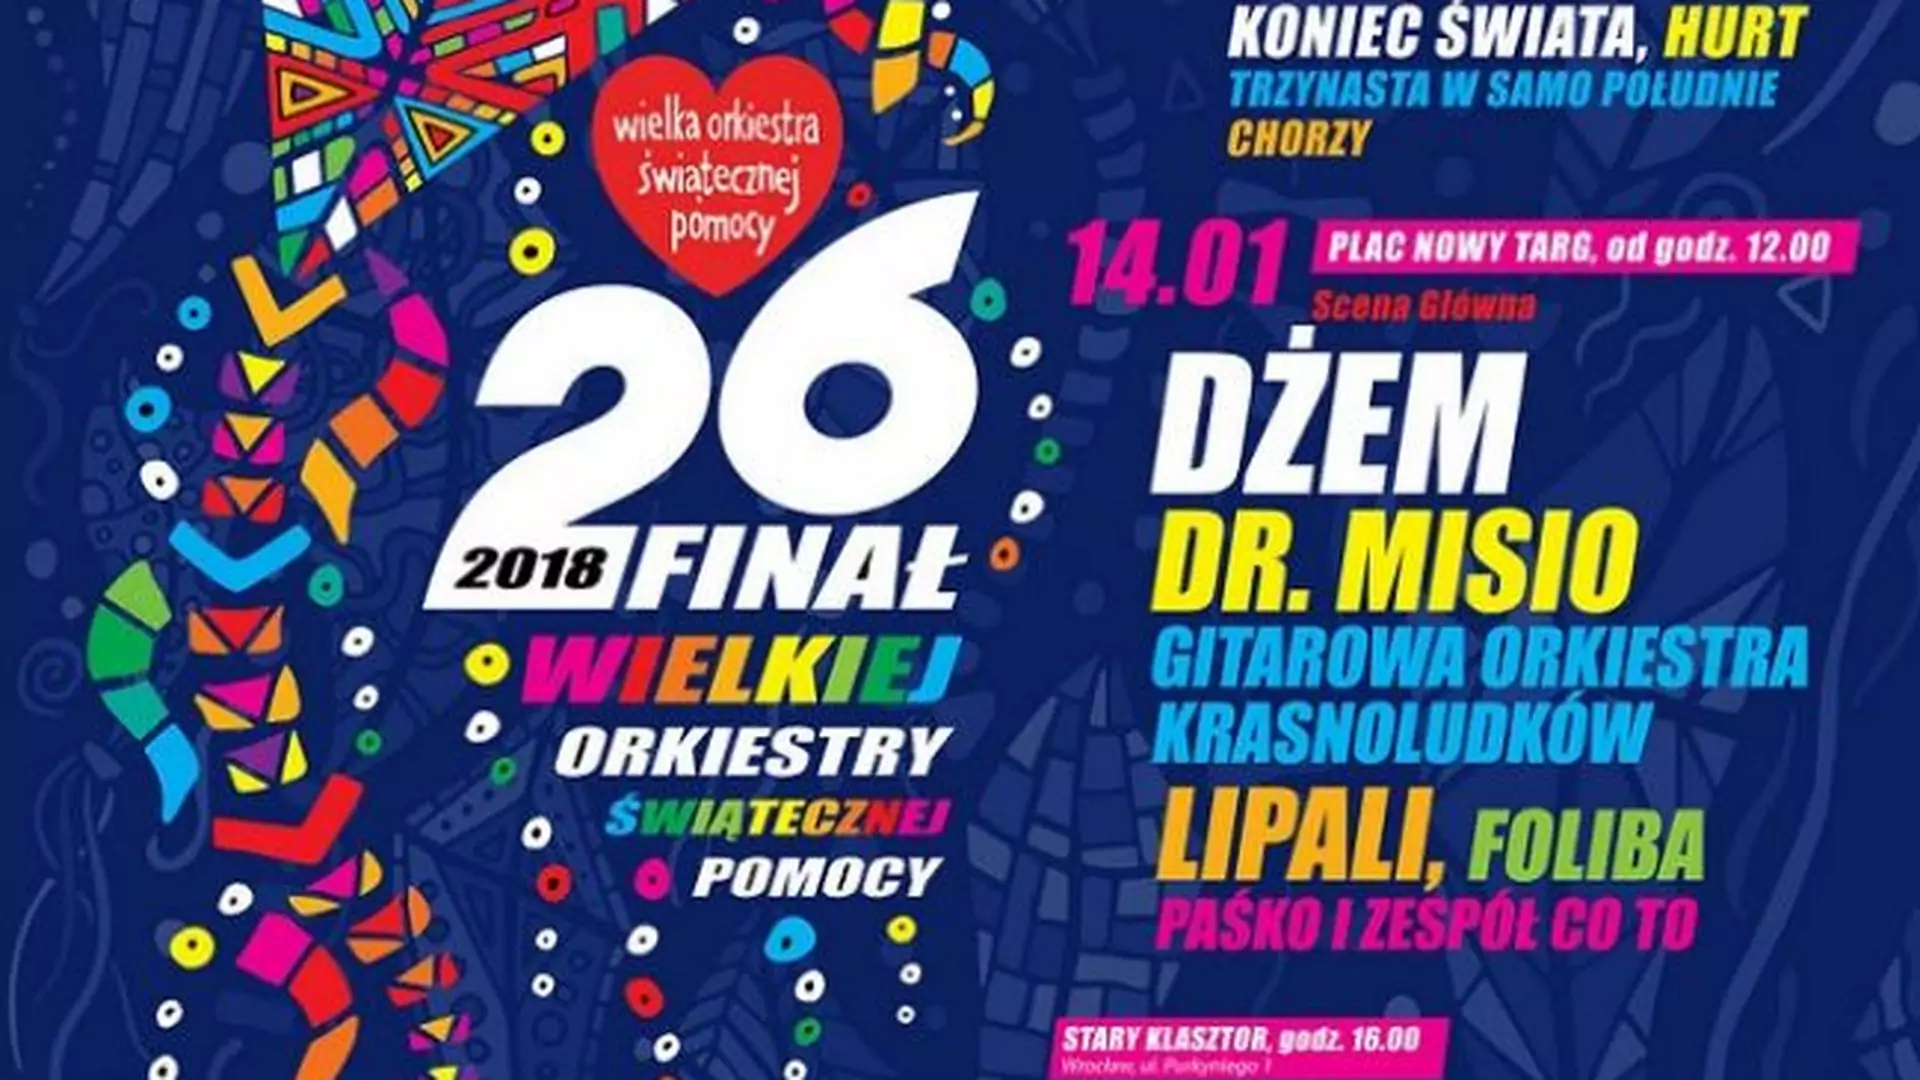 Fajne koncerty podczas finału WOŚP 2018:Warszawa, Wrocław, Poznań i Trójmiasto